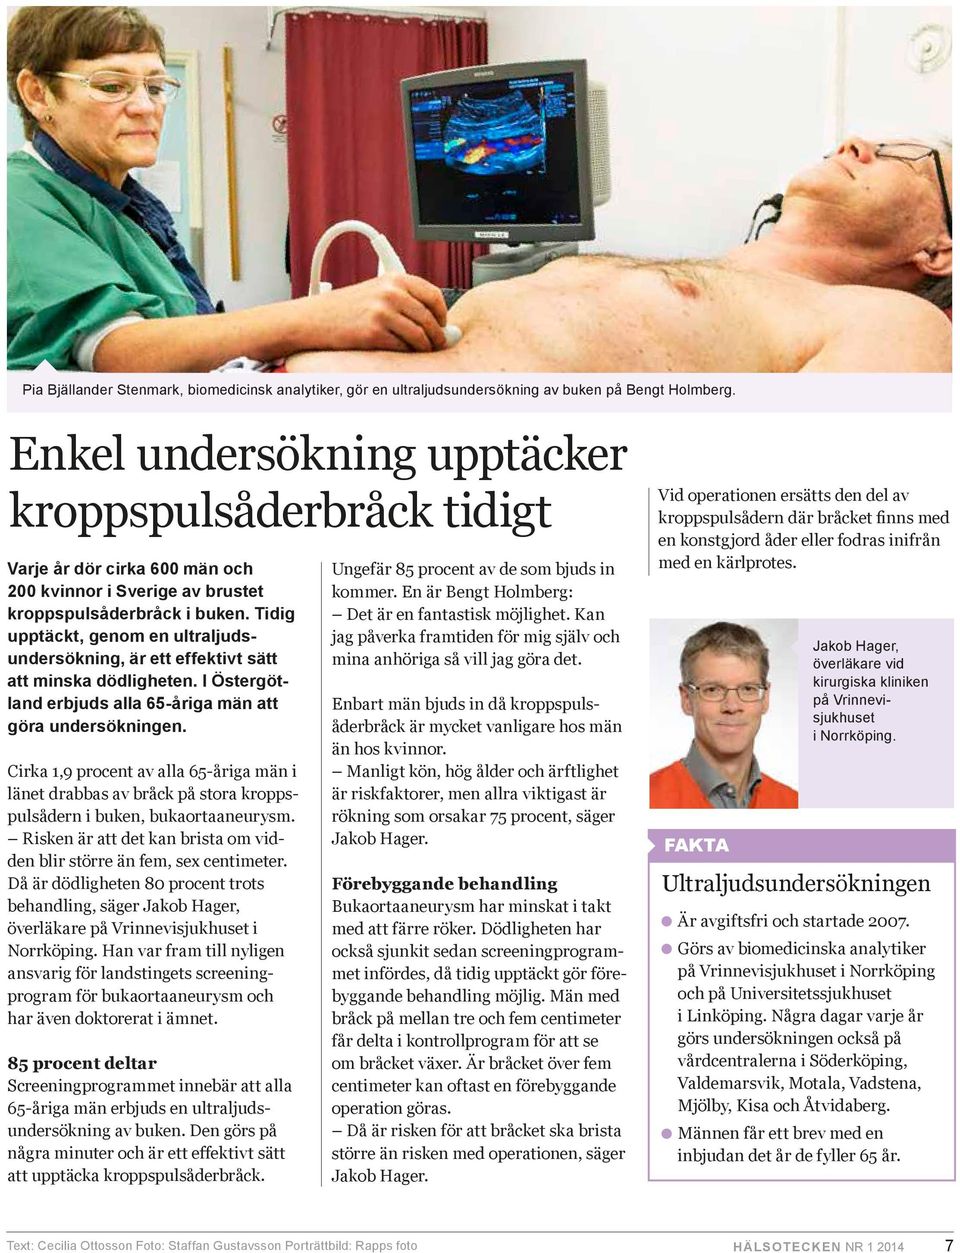 Tidig upptäckt, genom en ultraljudsundersökning, är ett effektivt sätt att minska dödligheten. I Östergötland erbjuds alla 65-åriga män att göra undersökningen.